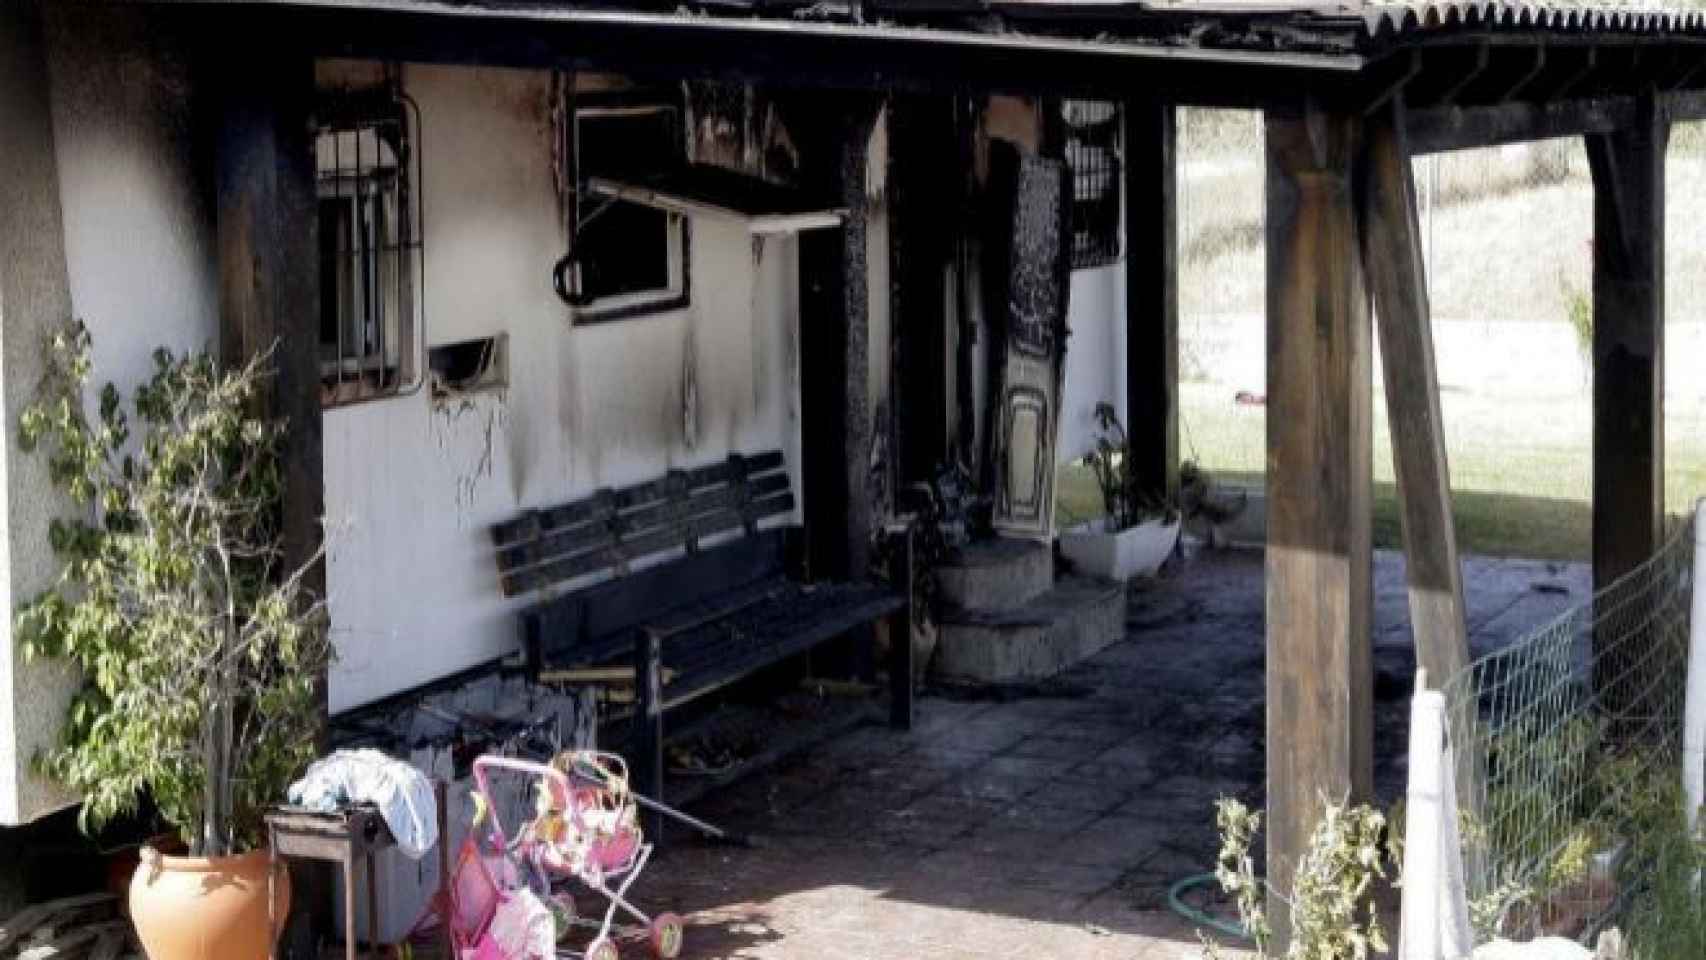 El fuego partió de una vela sin apagar y se propagó por una mesa de plástico y una viga de madera que incendió el porche de la vivienda.